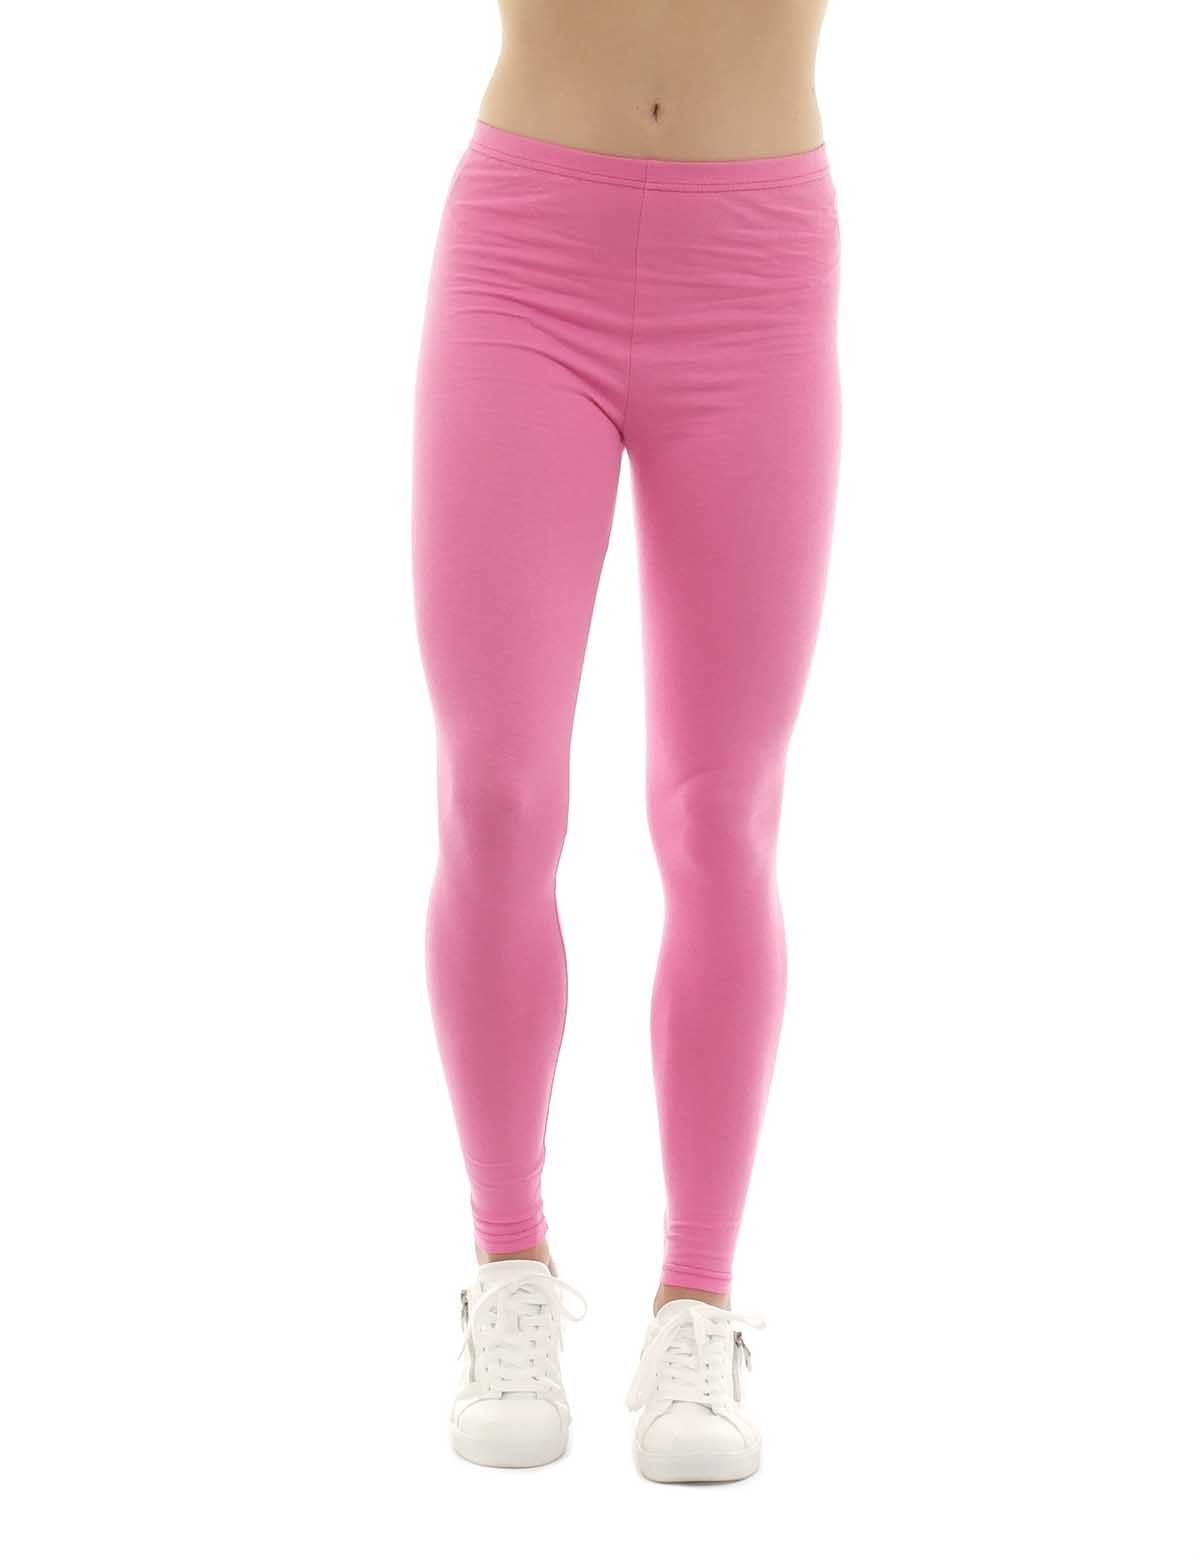 Damen F&K-Mode rosa Leggings gummi Baumwolle Leggings Hose lang